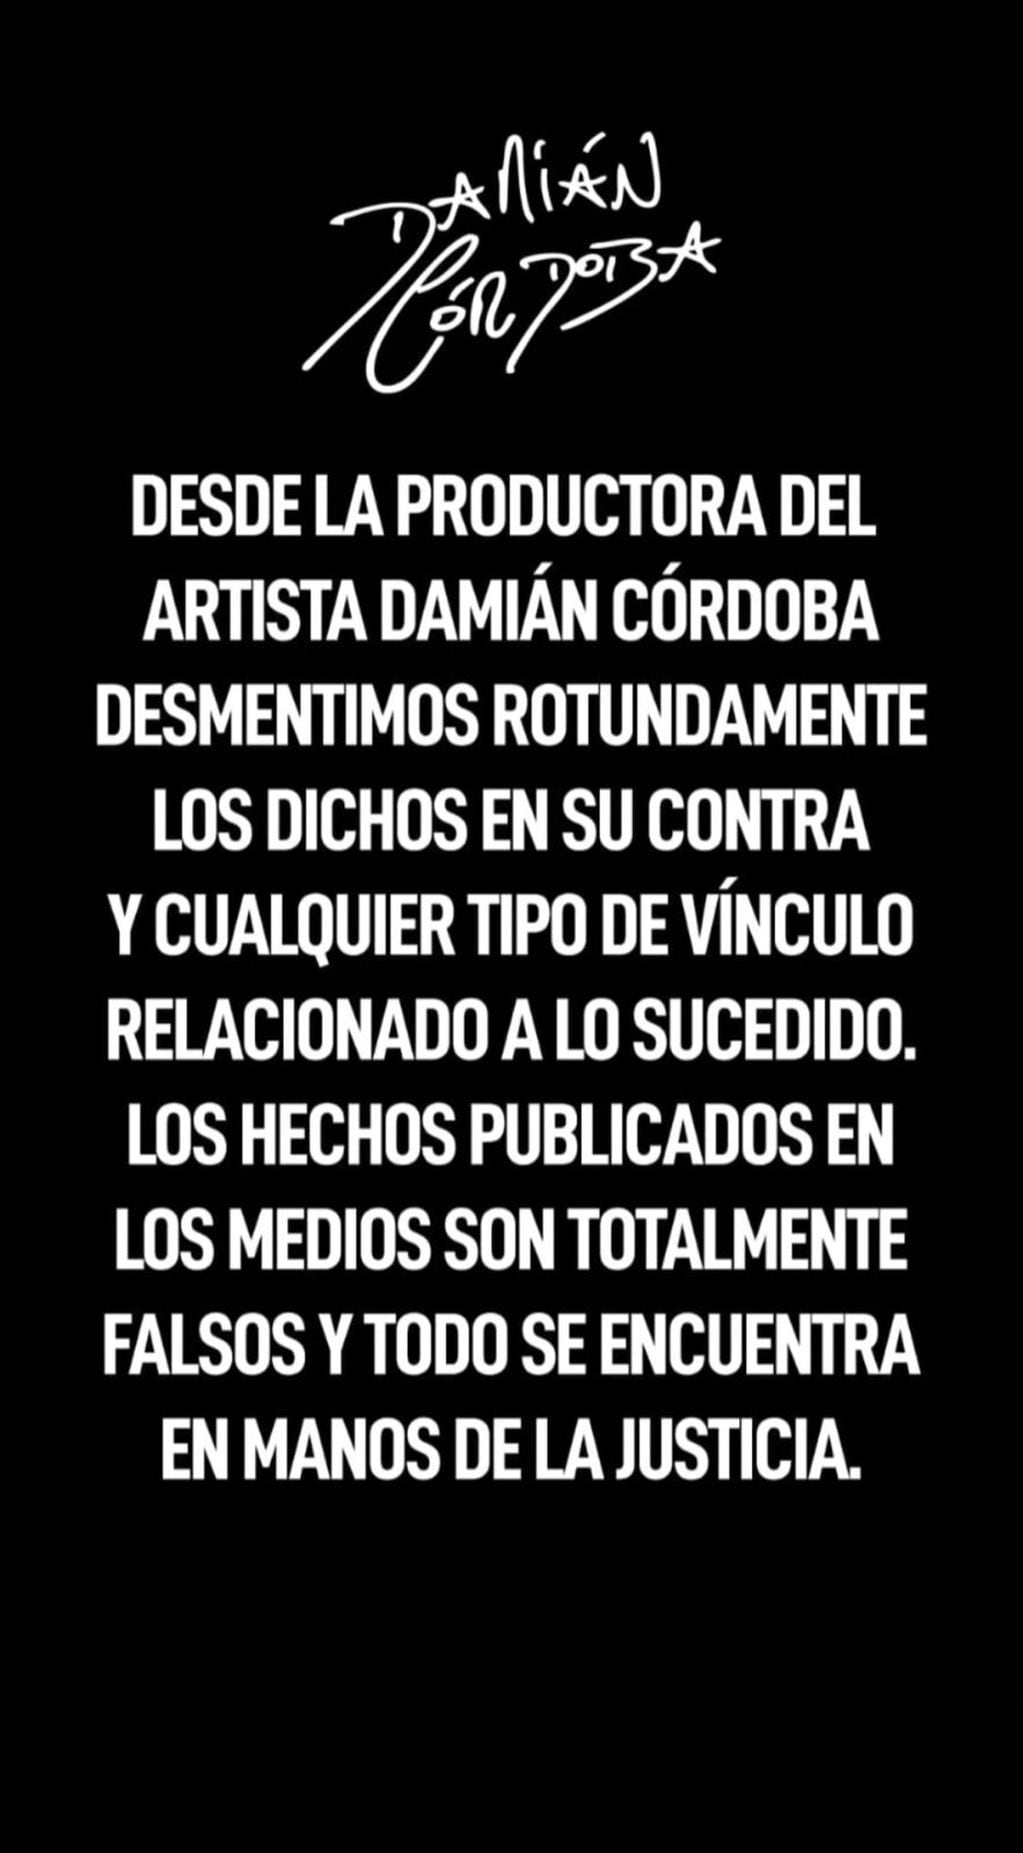 Comunicado de Damián Córdoba y su productora.